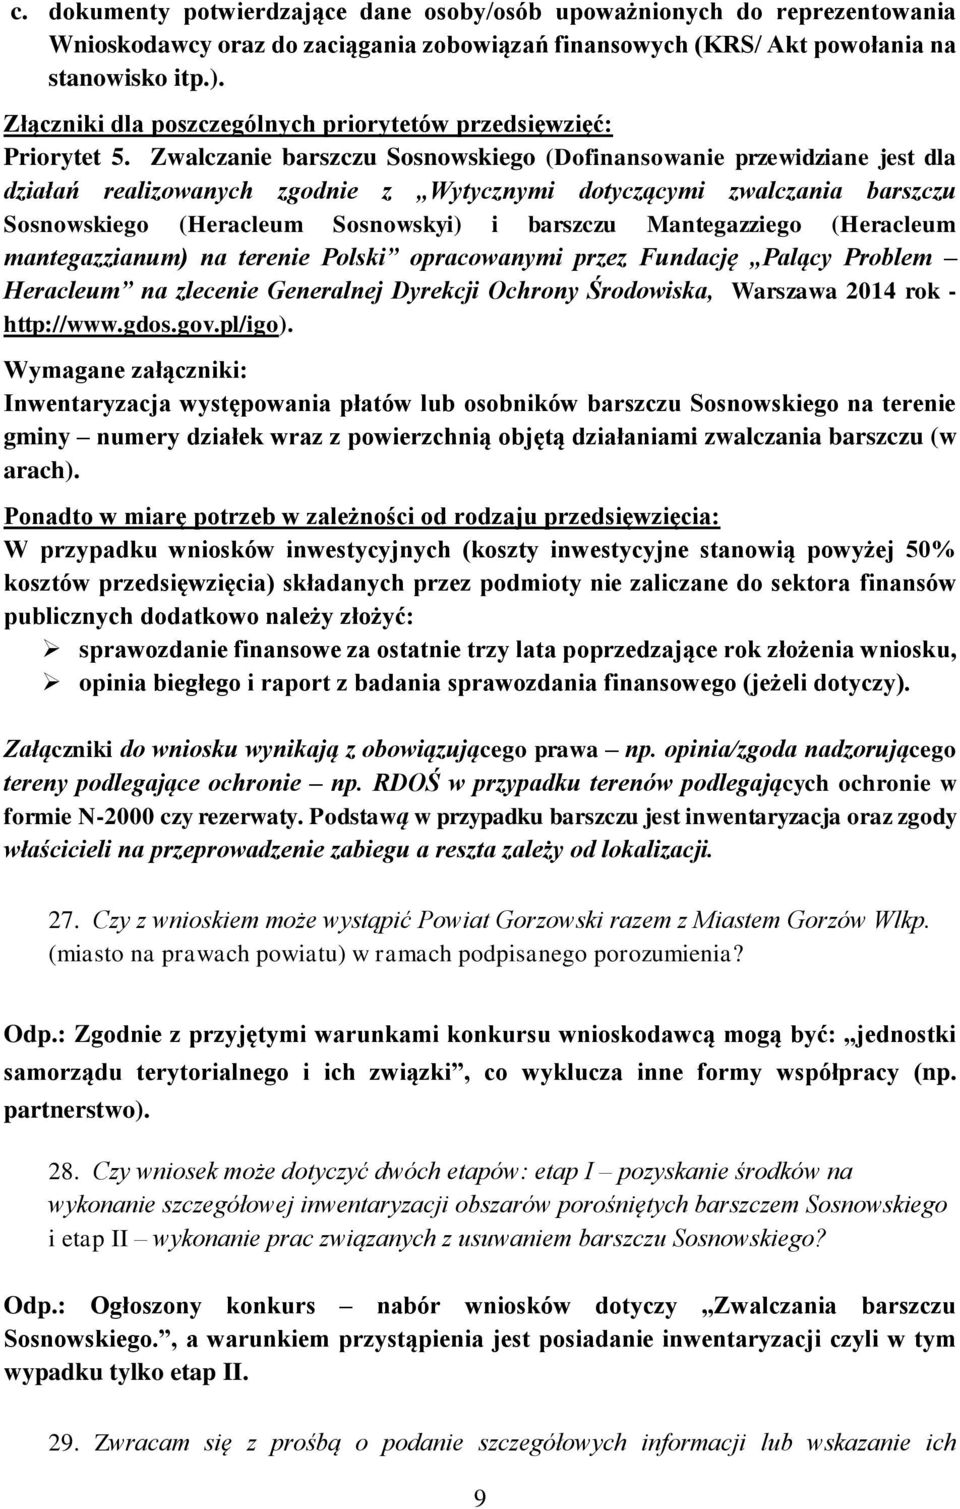 Zwalczanie barszczu Sosnowskiego (Dofinansowanie przewidziane jest dla działań realizowanych zgodnie z Wytycznymi dotyczącymi zwalczania barszczu Sosnowskiego (Heracleum Sosnowskyi) i barszczu